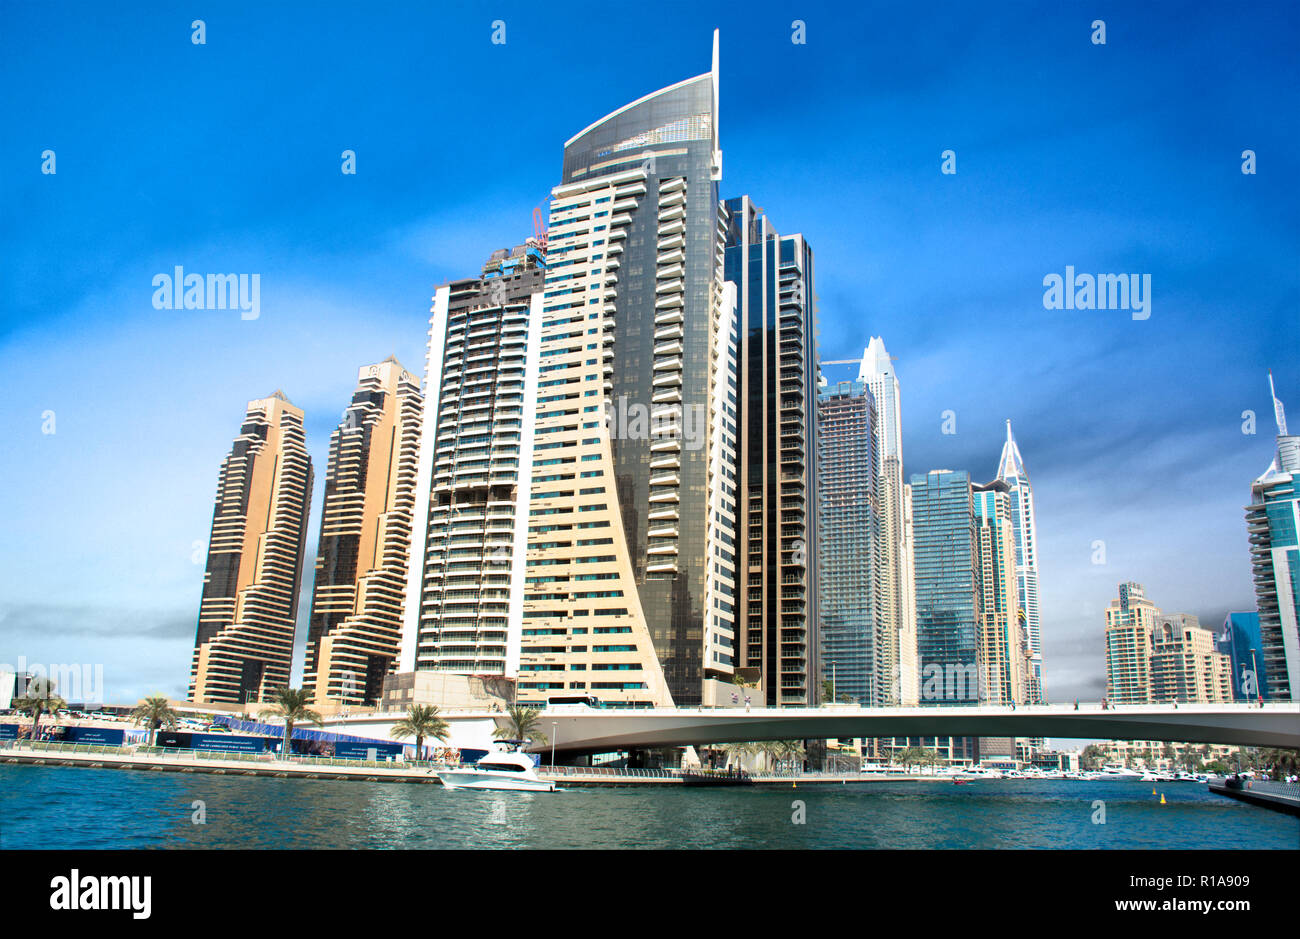 La Marina de Dubaï des immeubles modernes vue paysage, belle architecture design luxury endroit à visiter dans la région de Moyen-Orient Banque D'Images